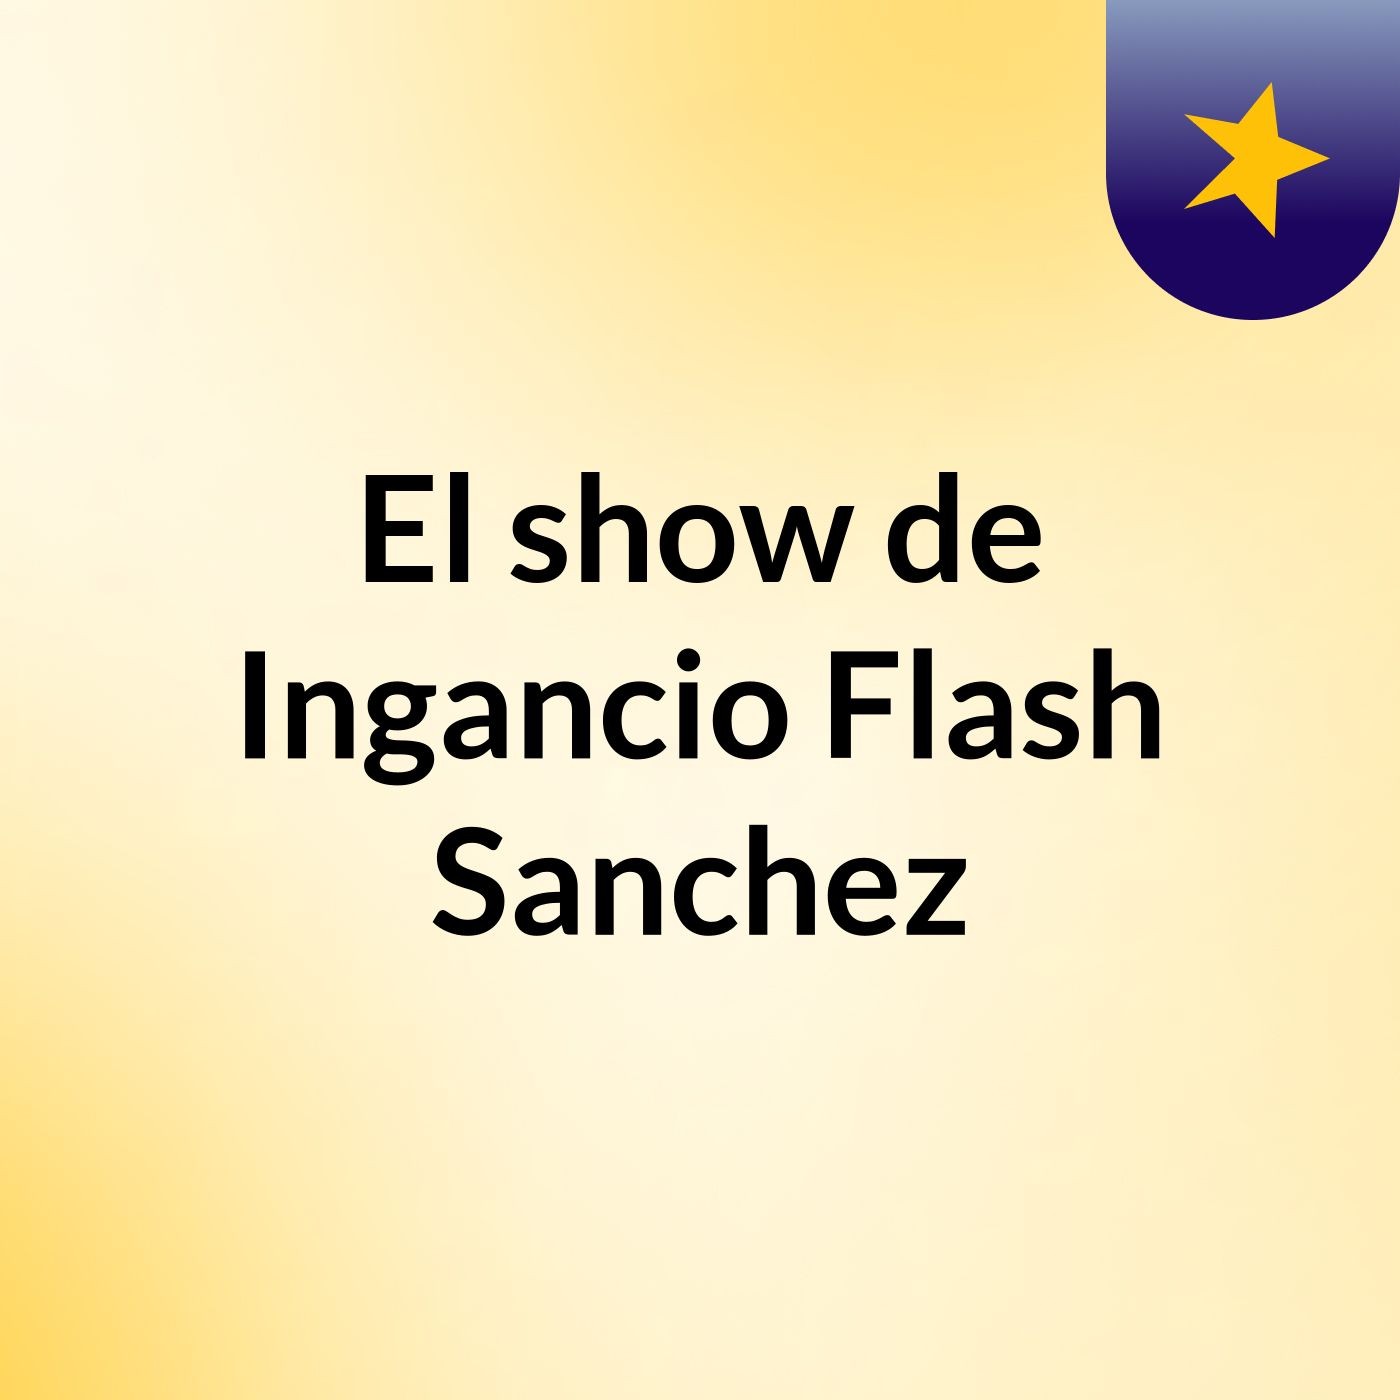 El show de Ingancio Flash Sanchez